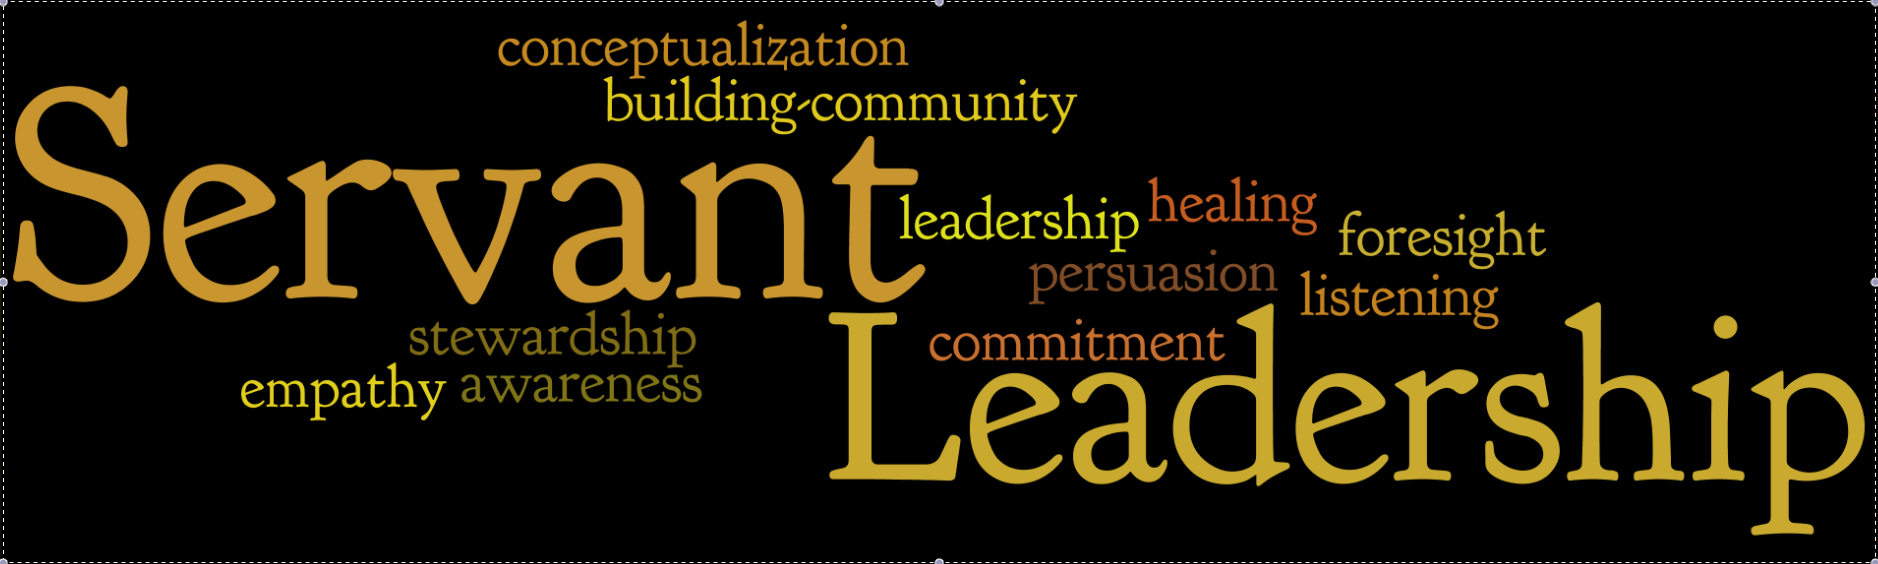 summary of servant leadership